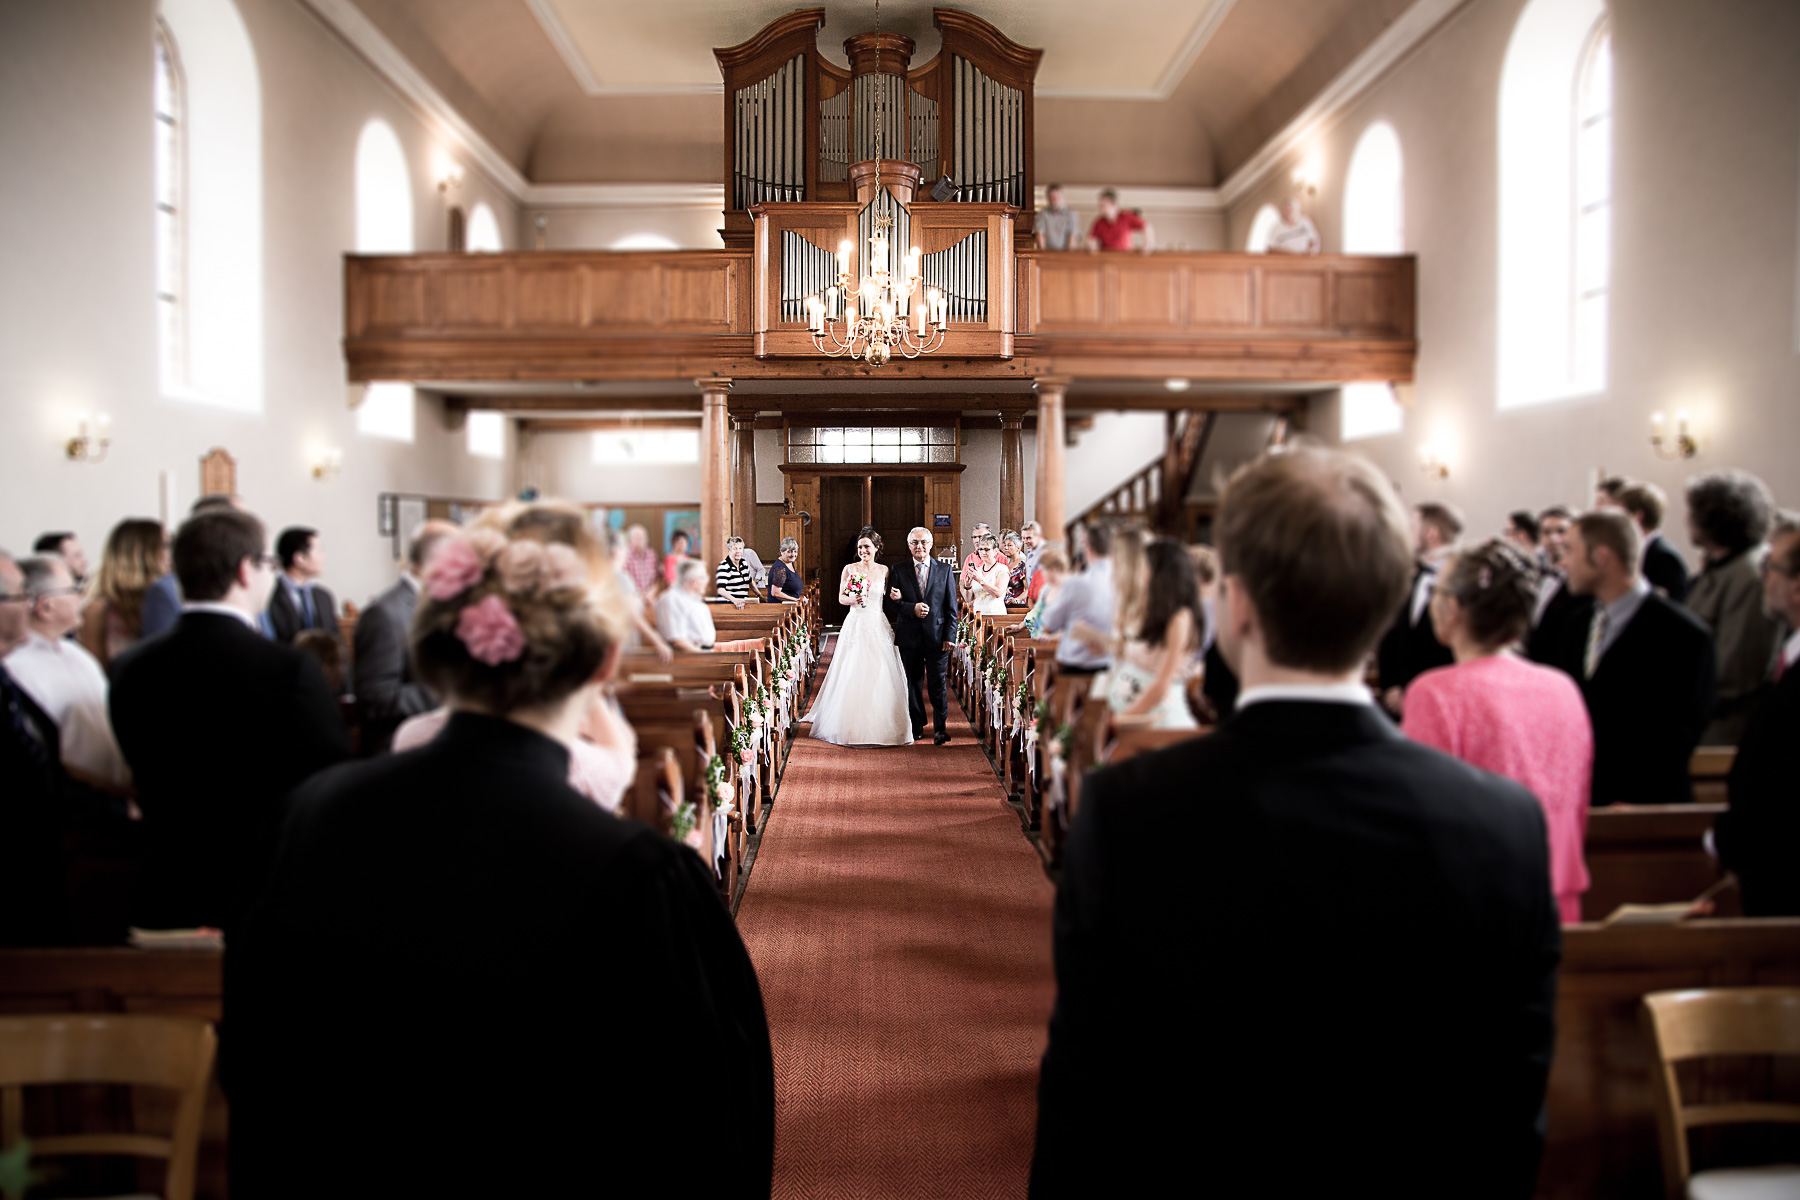 Die Braut hält sich an ihrem Vater fest und lächelt, während sie den Hauptgang des Kirchensaals passieren. Sie sind bereits auf dem halben Weg zum Bräutigam. Der Bräutigam, die Priesterin und alle Traugäste haben ihre Blicke auf die Braut gerichtet.